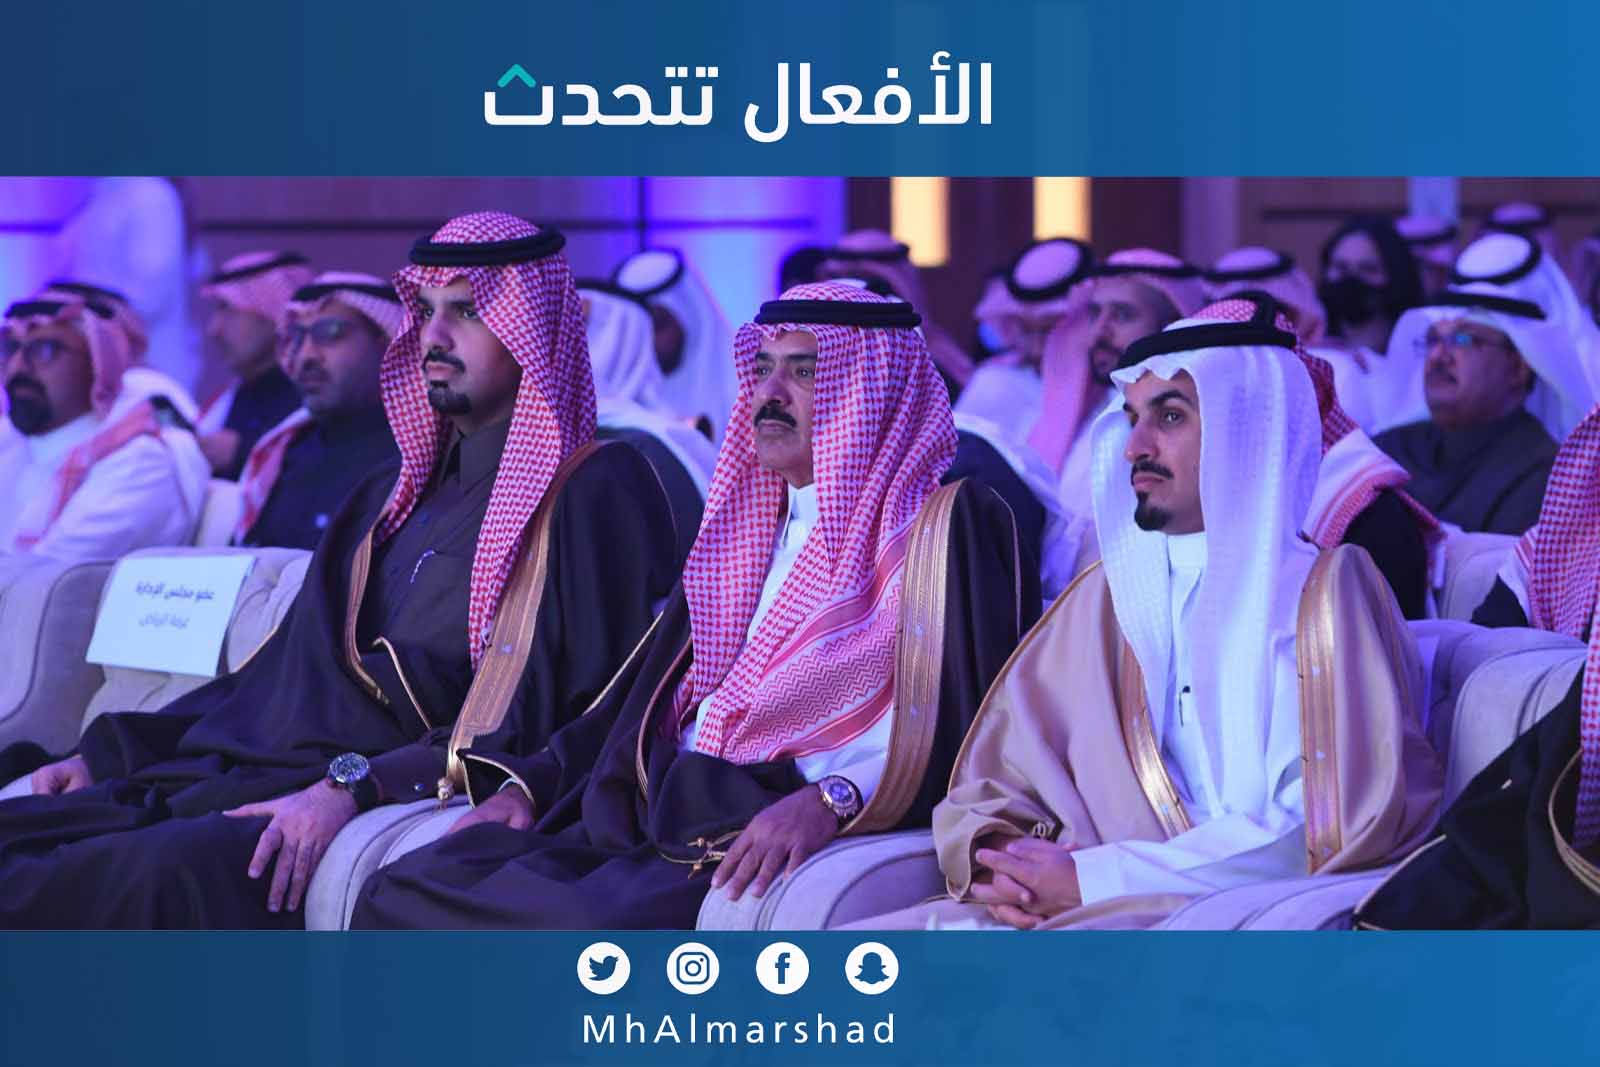 سعدنا برعاية سمو أمير منطقة الرياض بالنيابة وتشريف أمين منطقة الرياض في حفل جائزة غرفة الرياض